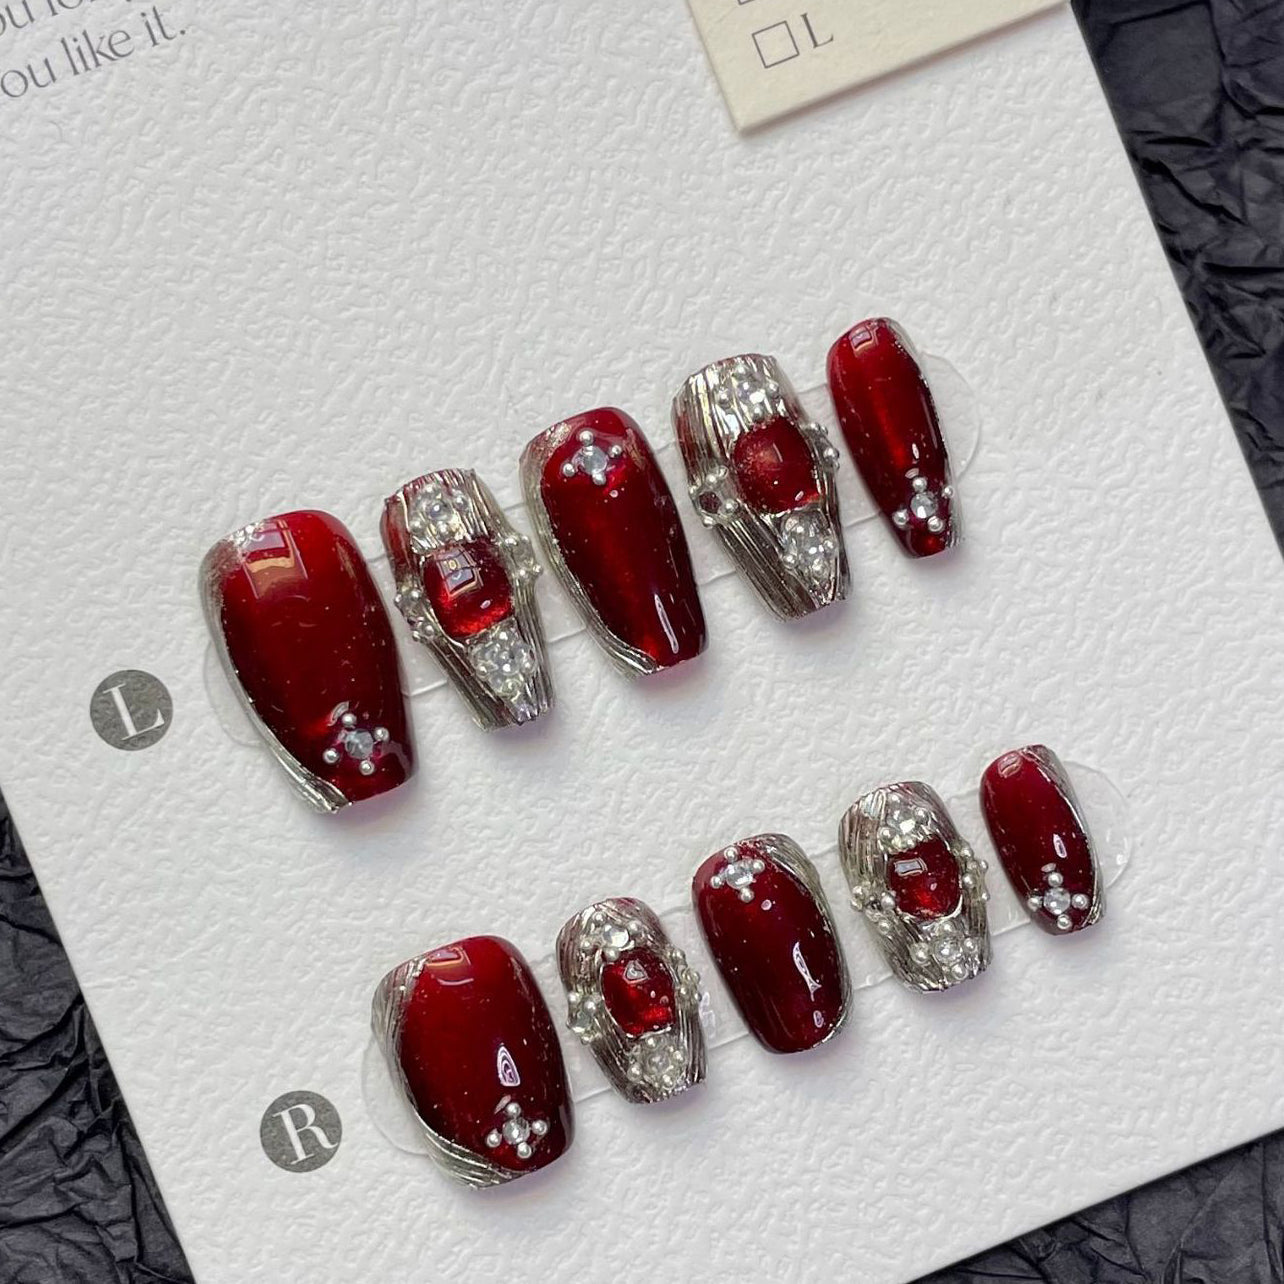 1241/1246 Presse de style BUCCELLATI rouge sur les ongles 100% faux ongles faits à la main ruban rouge